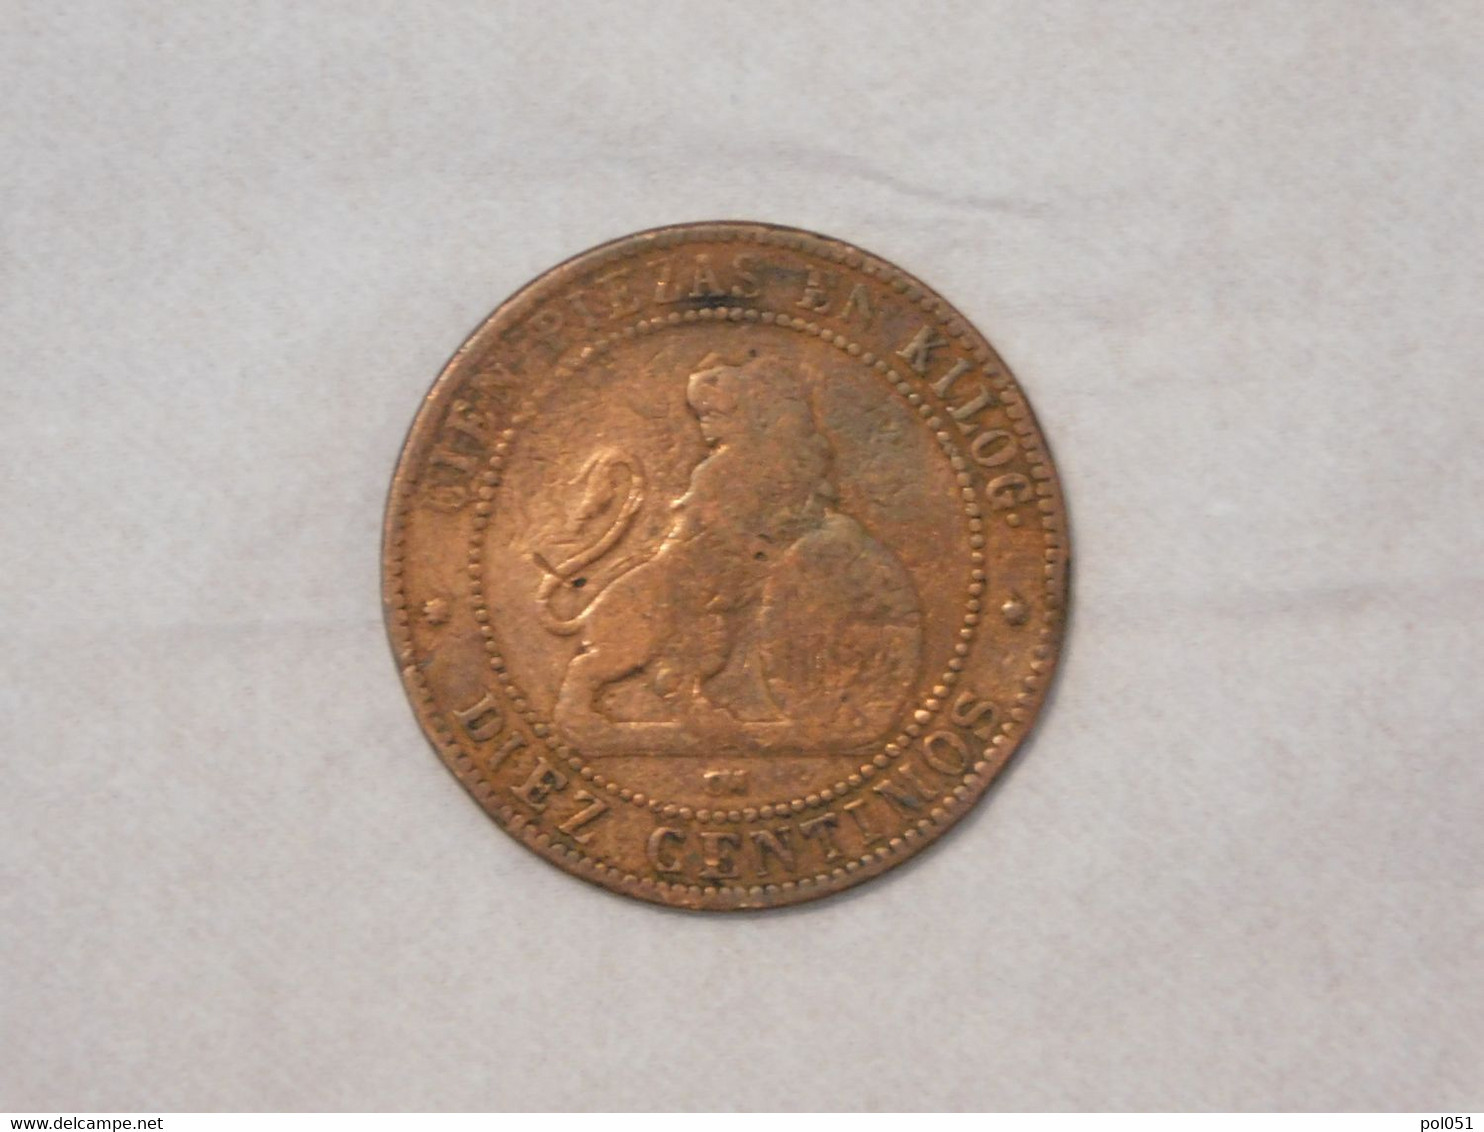 ESPAGNE SPAIN 10 DIEZ CENTIMOS CENT DE REAL 1870 - Monnaies Provinciales